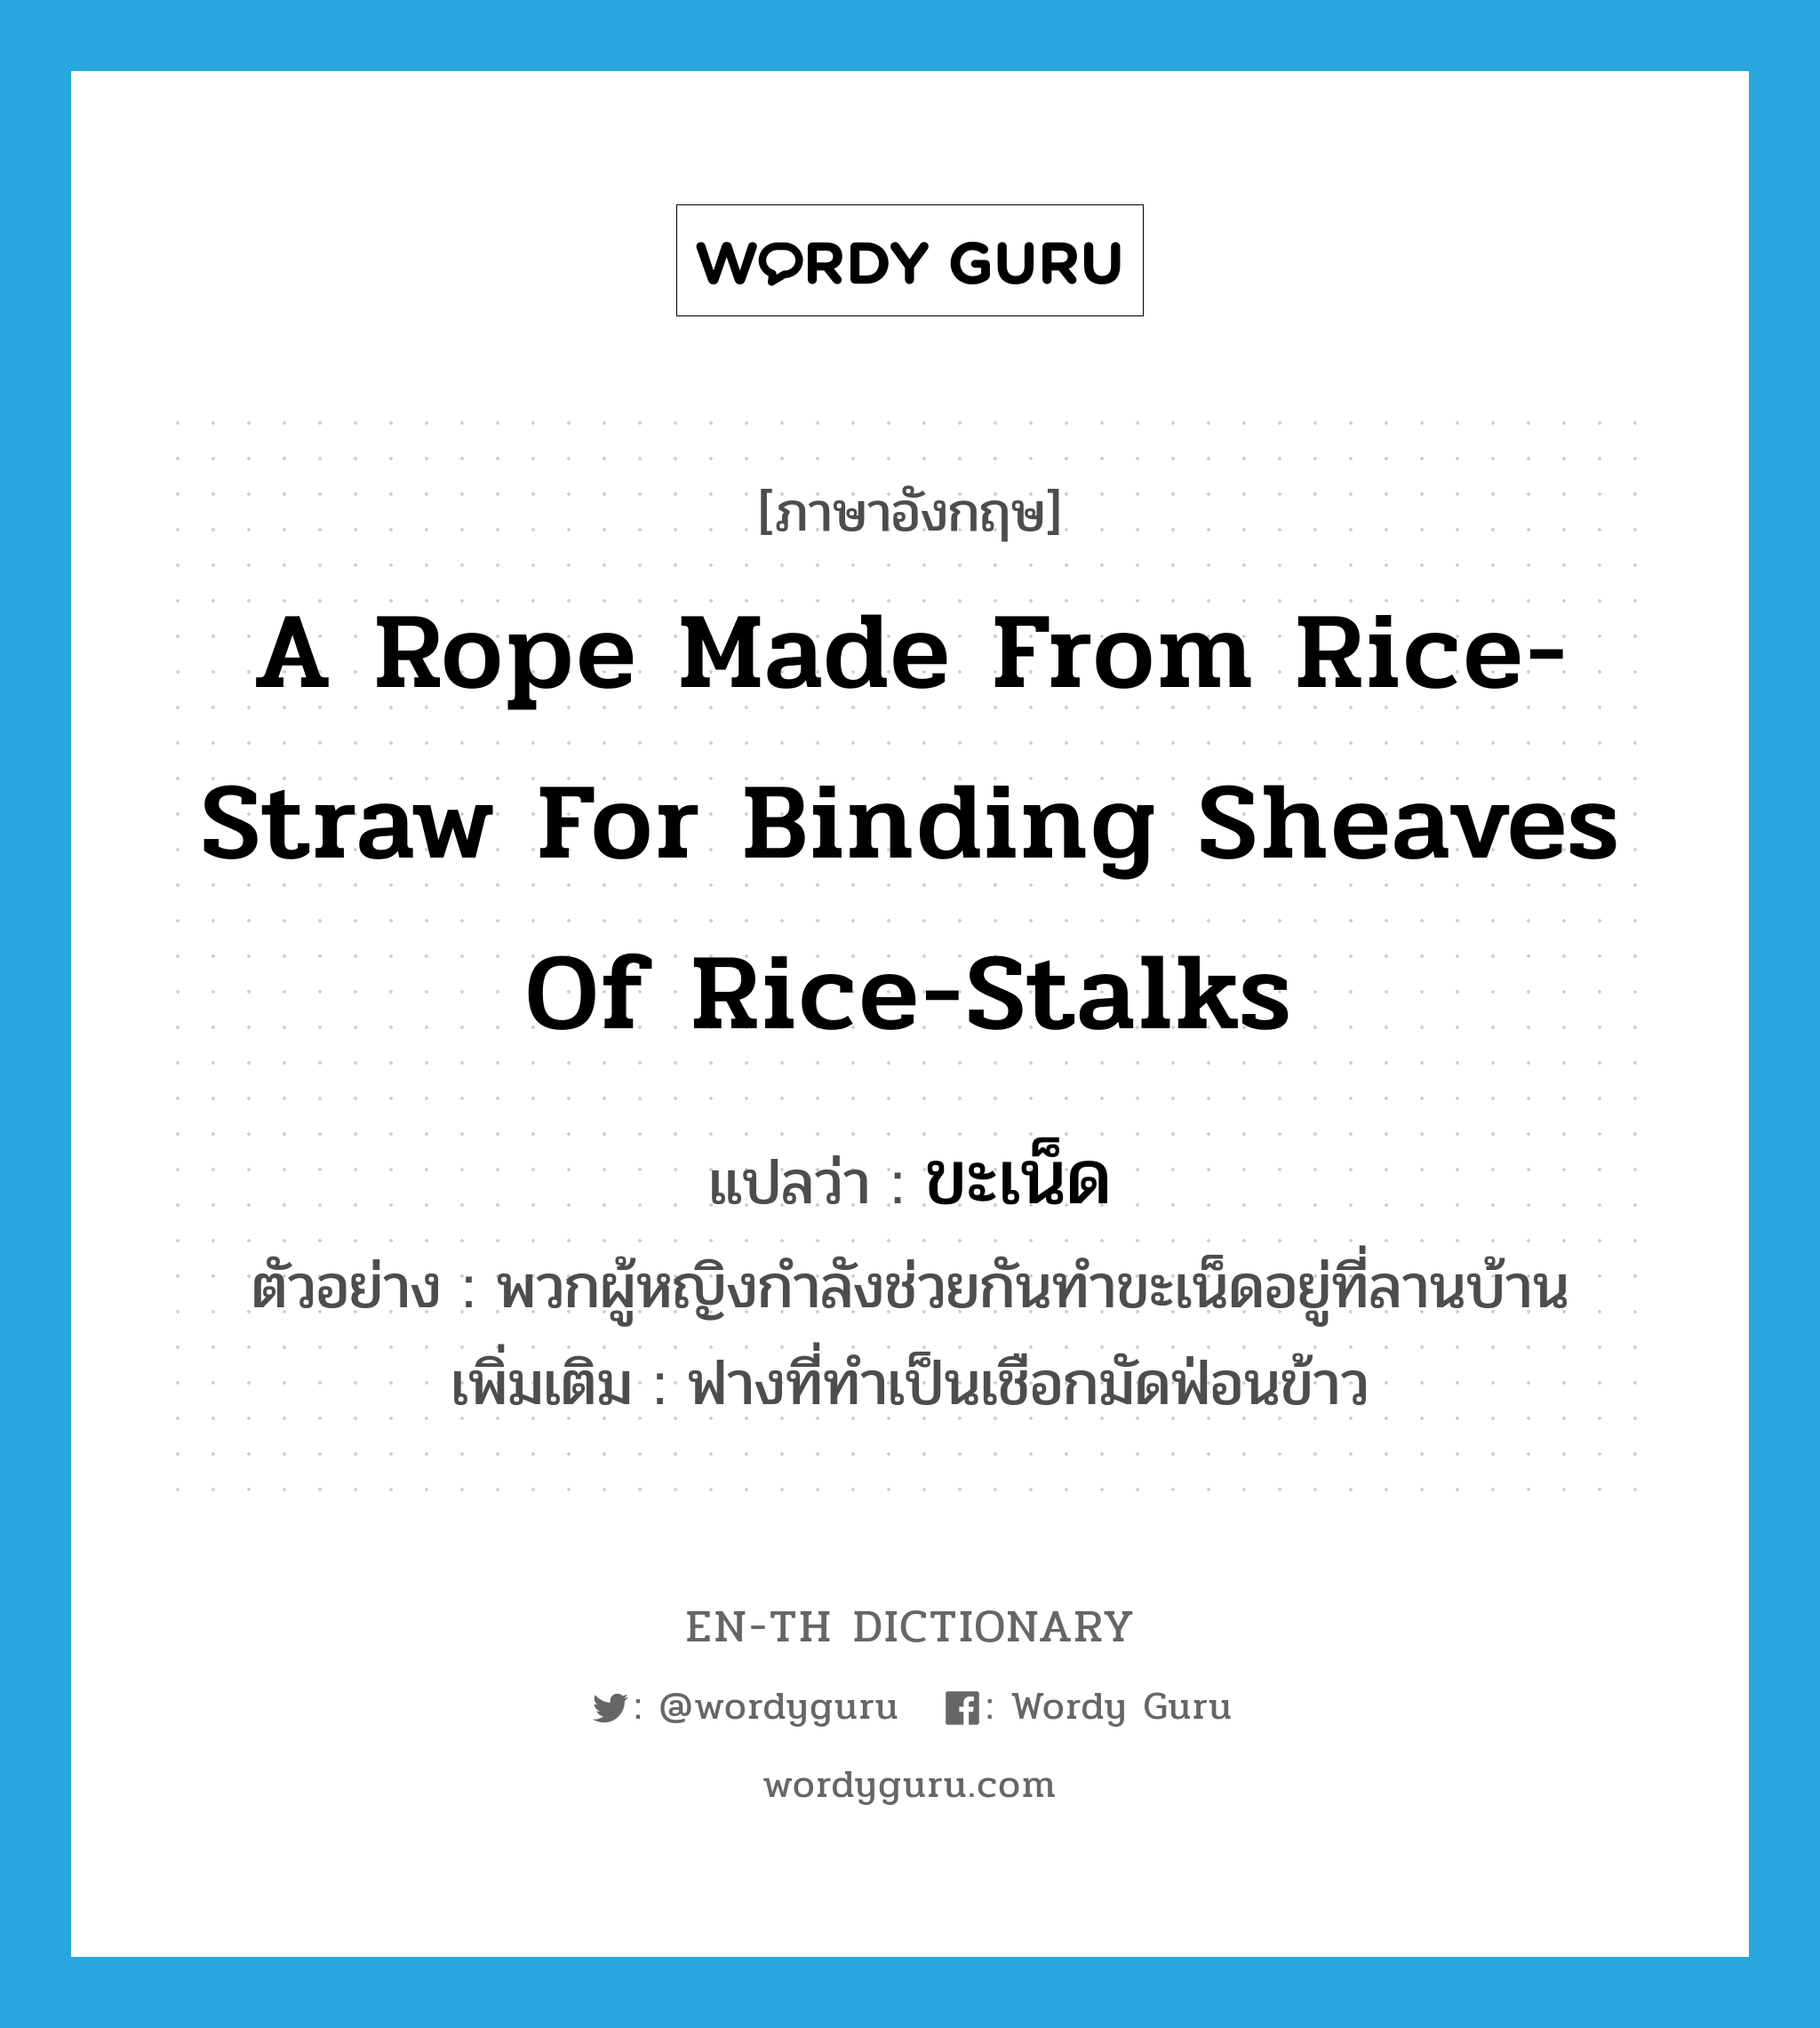 ขะเน็ด ภาษาอังกฤษ?, คำศัพท์ภาษาอังกฤษ ขะเน็ด แปลว่า a rope made from rice-straw for binding sheaves of rice-stalks ประเภท N ตัวอย่าง พวกผู้หญิงกำลังช่วยกันทำขะเน็ดอยู่ที่ลานบ้าน เพิ่มเติม ฟางที่ทำเป็นเชือกมัดฟ่อนข้าว หมวด N